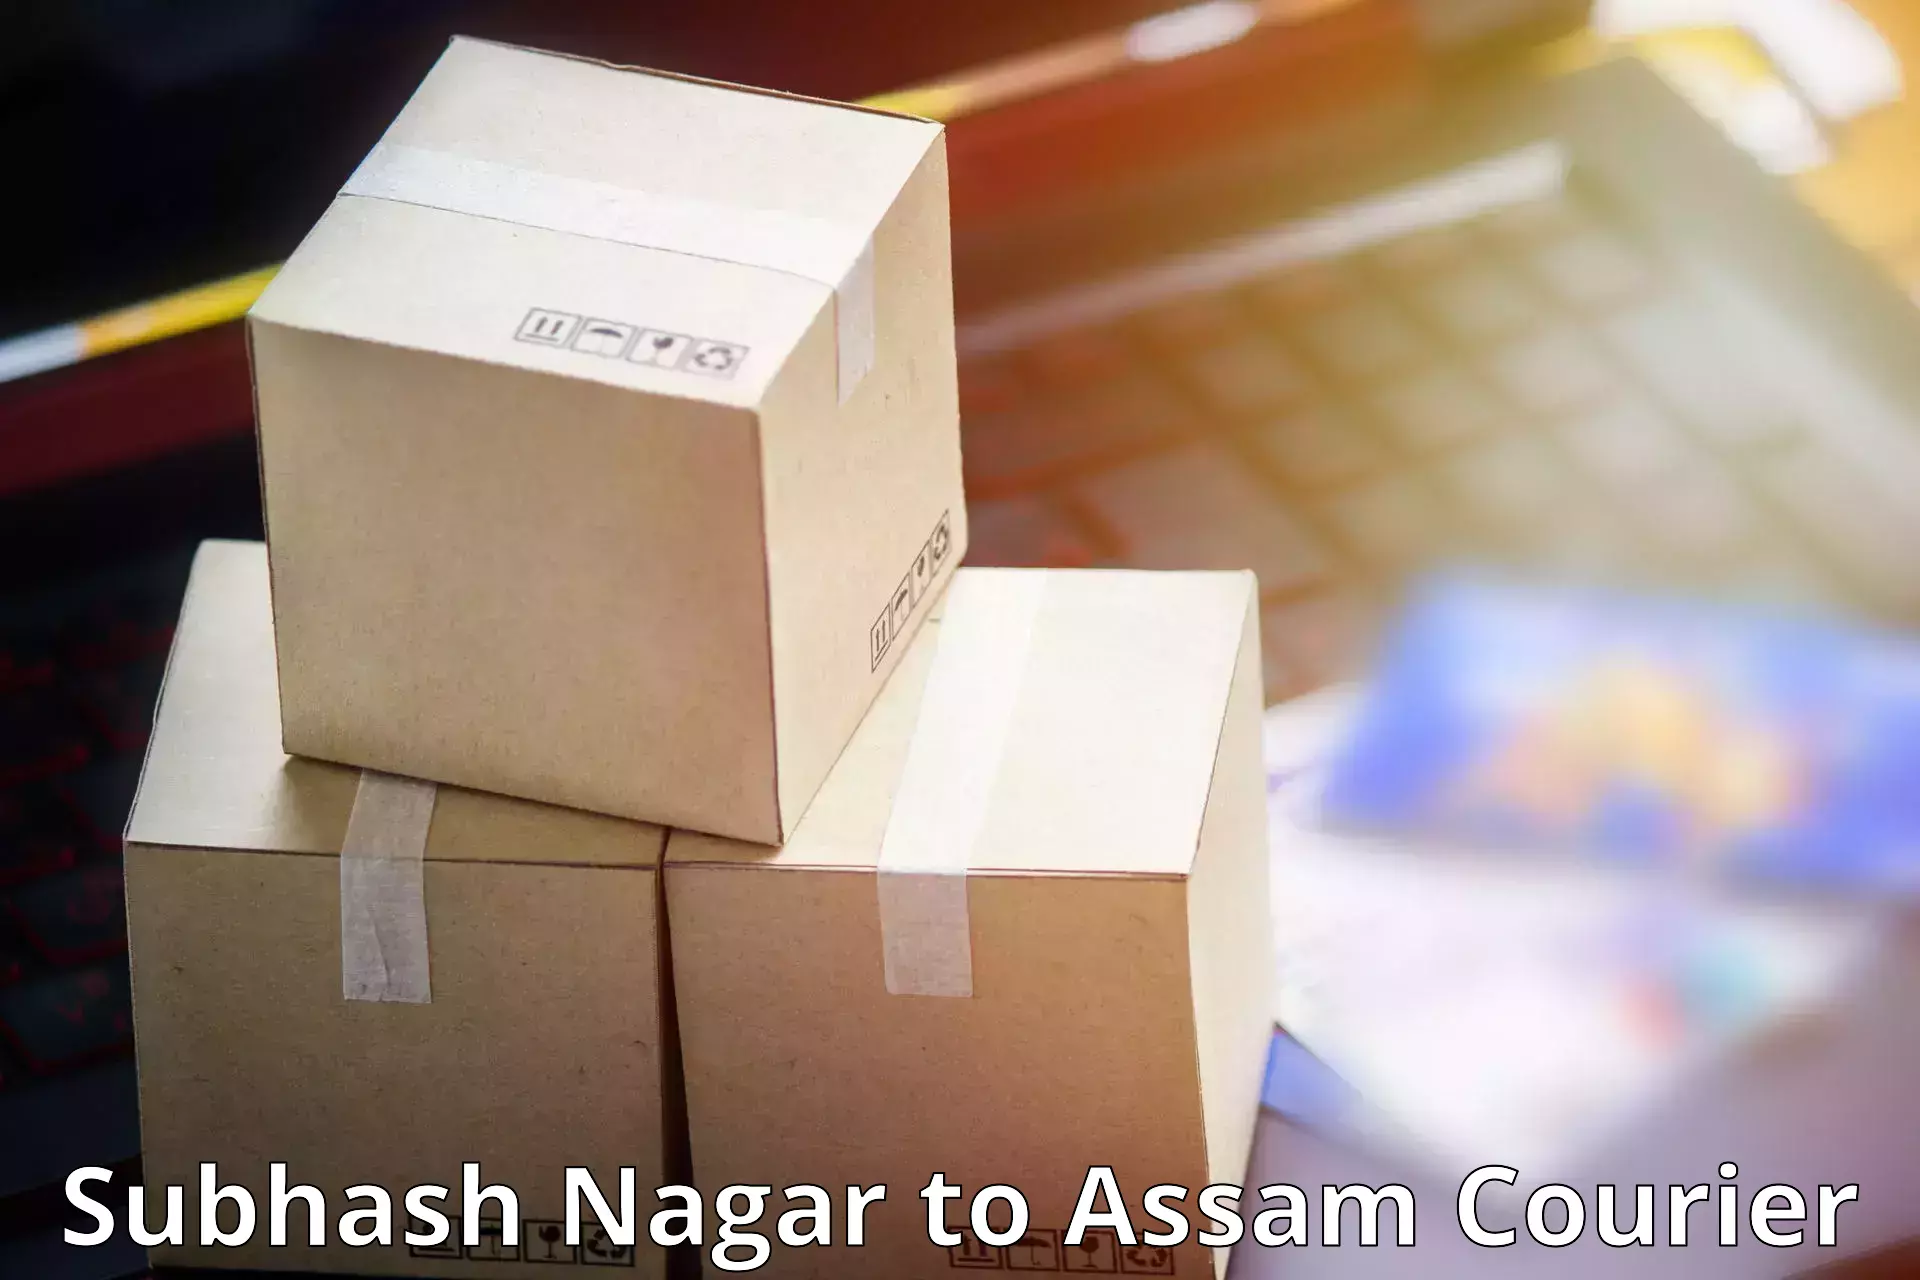 Smart courier technologies Subhash Nagar to Assam